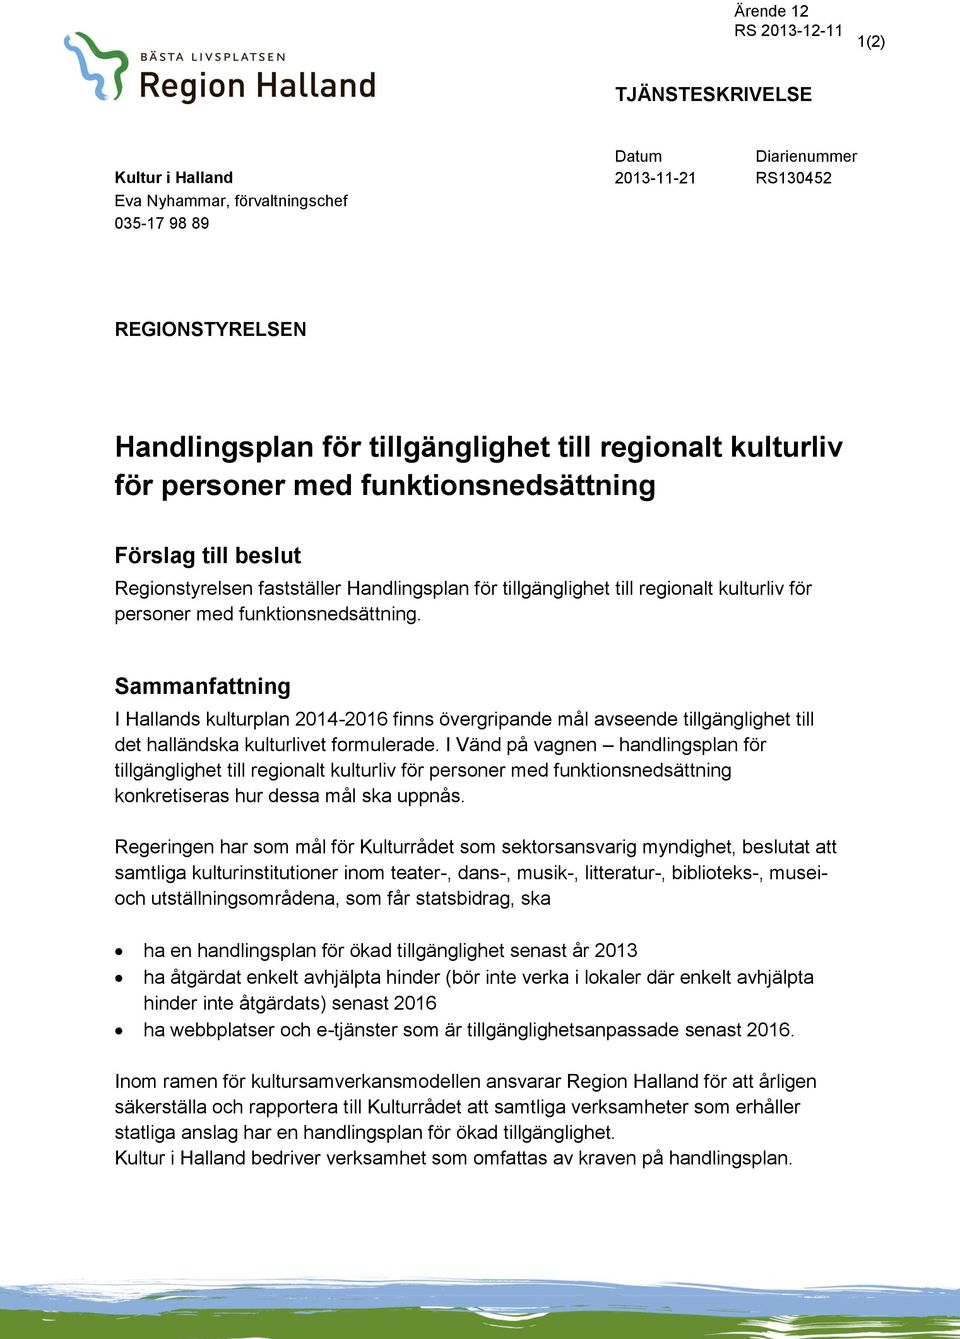 Sammanfattning I Hallands kulturplan 2014-2016 finns övergripande mål avseende tillgänglighet till det halländska kulturlivet formulerade.